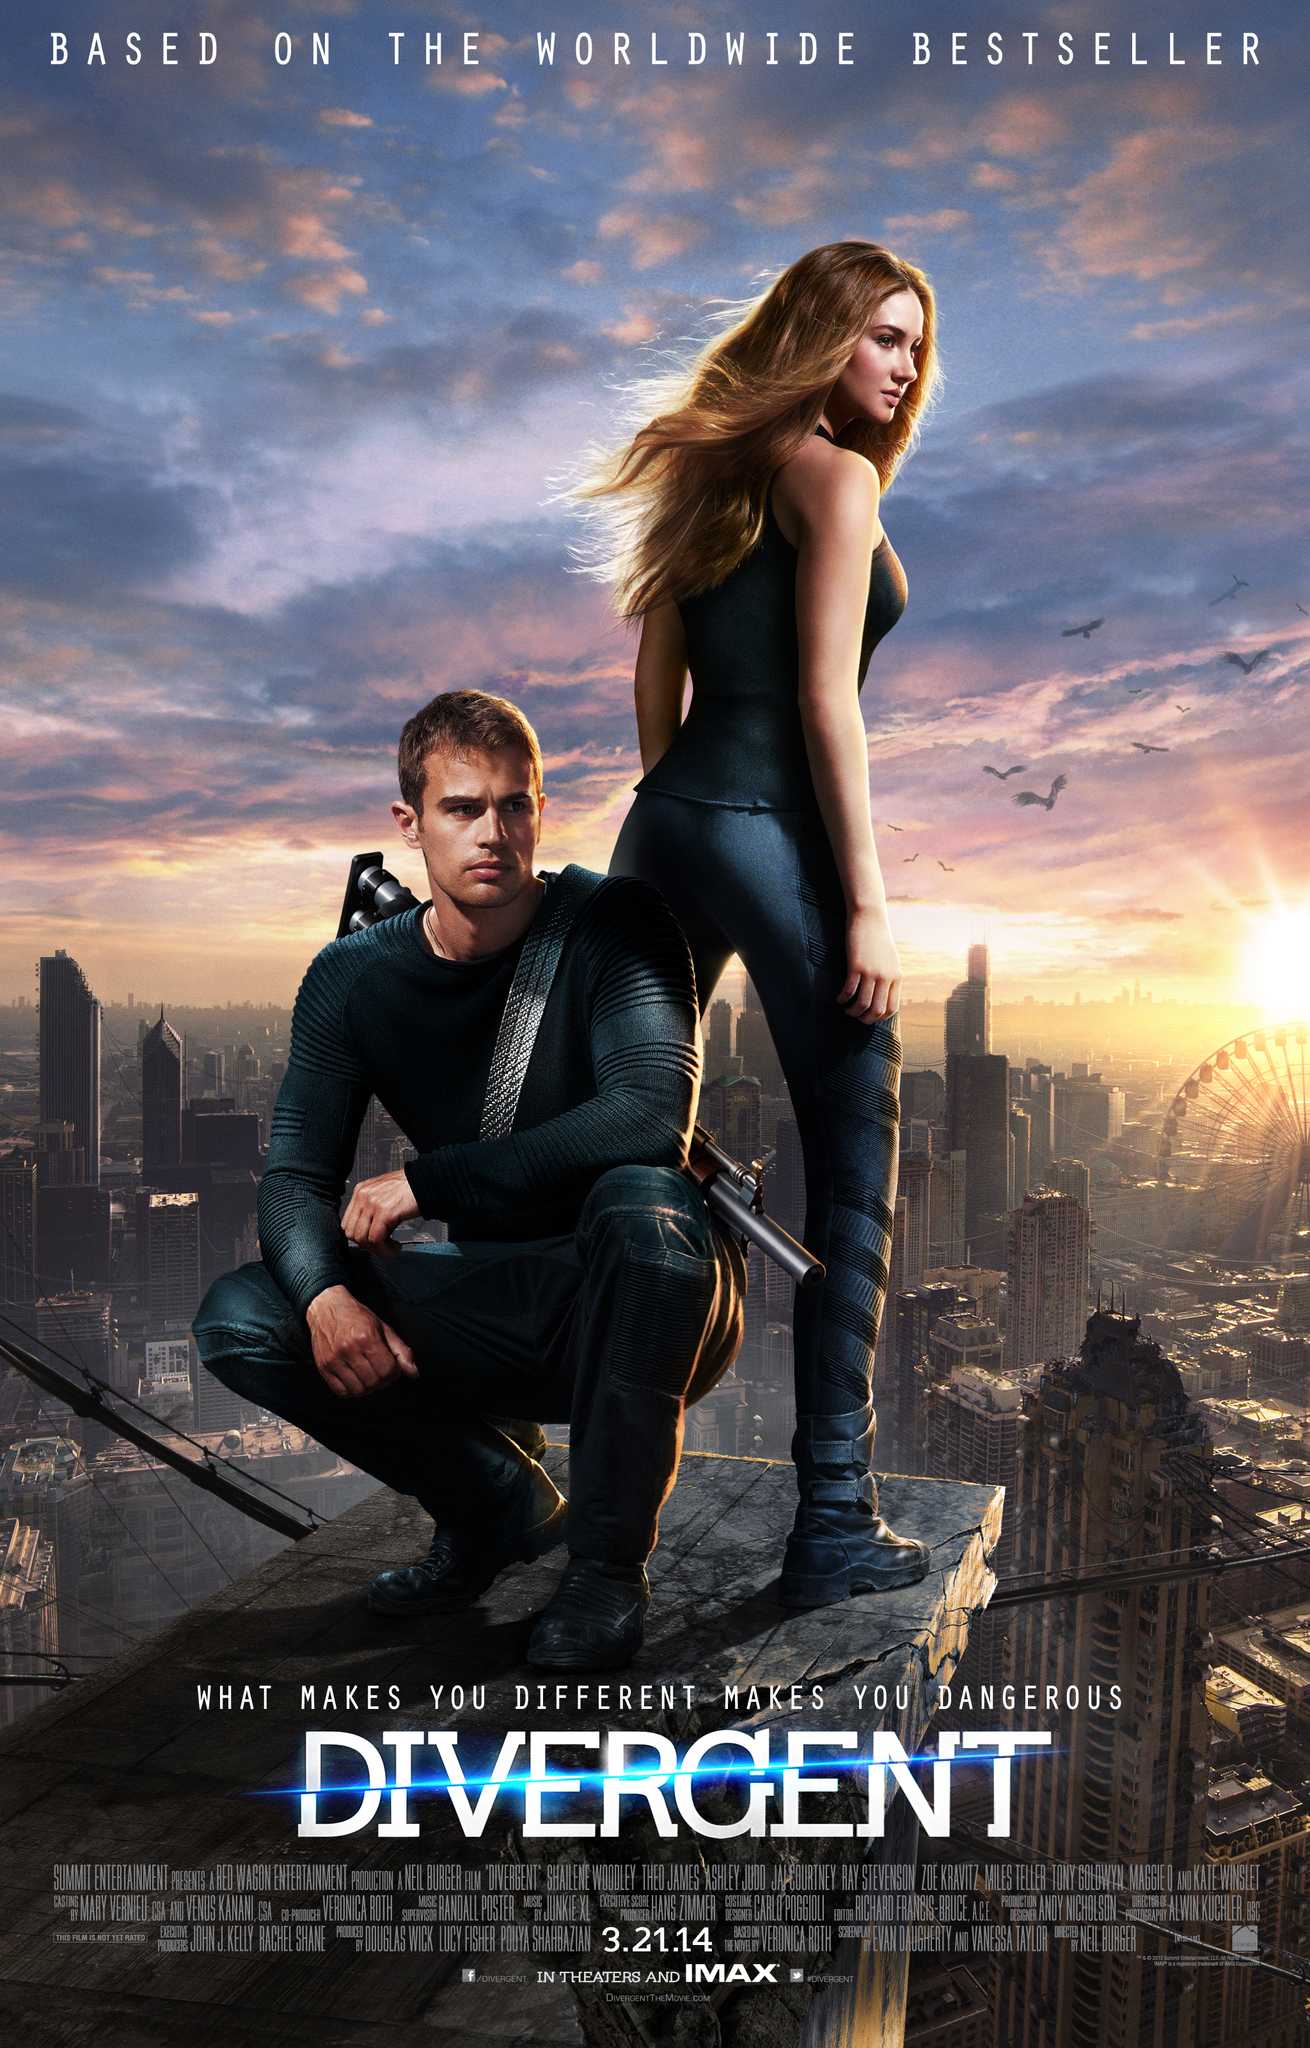 مشاهدة فيلم Divergent 2014 مترجم